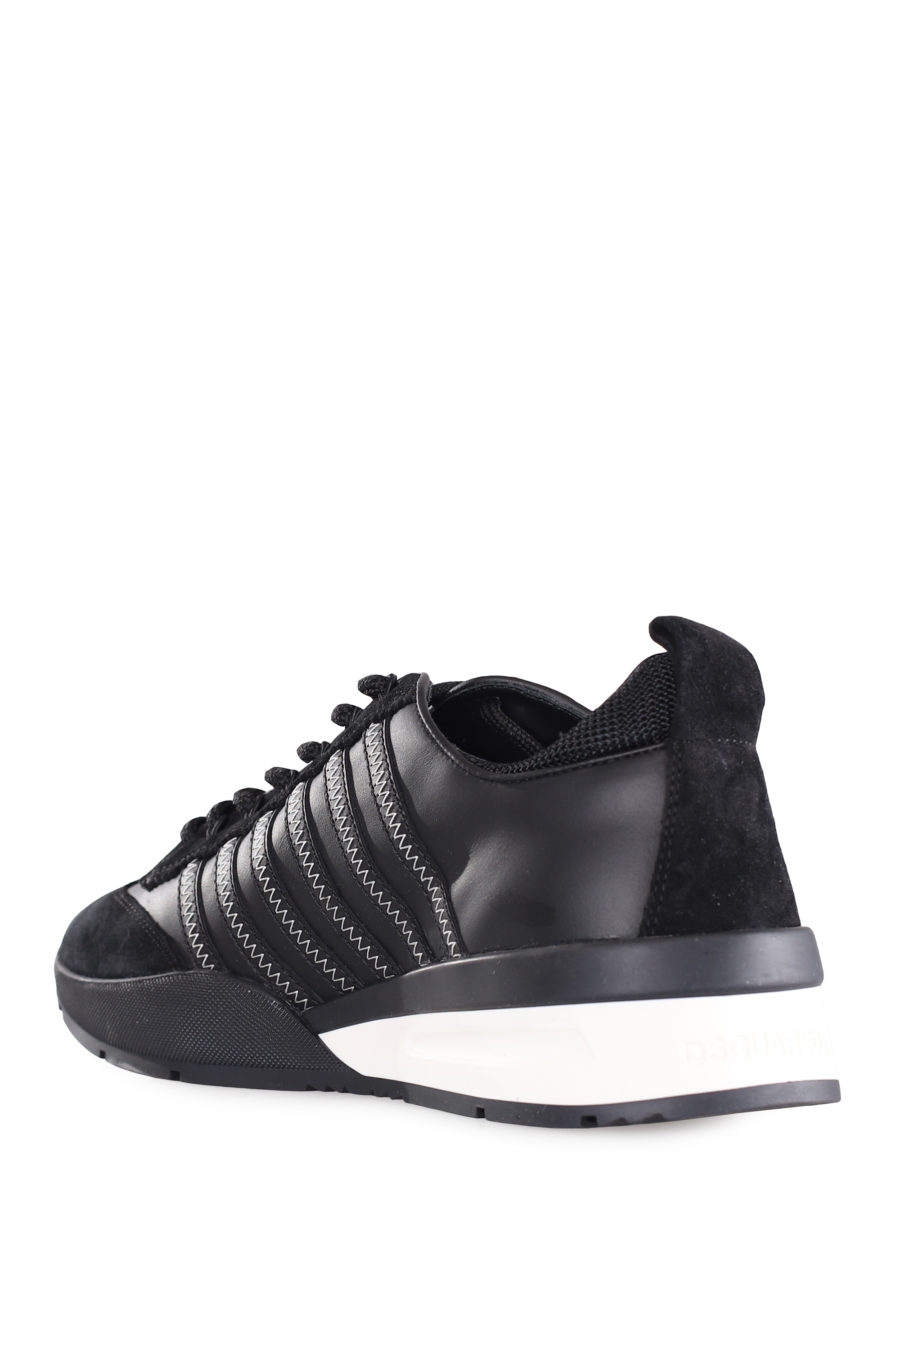 Zapatillas negras con lineas negras y logo blanco pequeño - IMG 9559